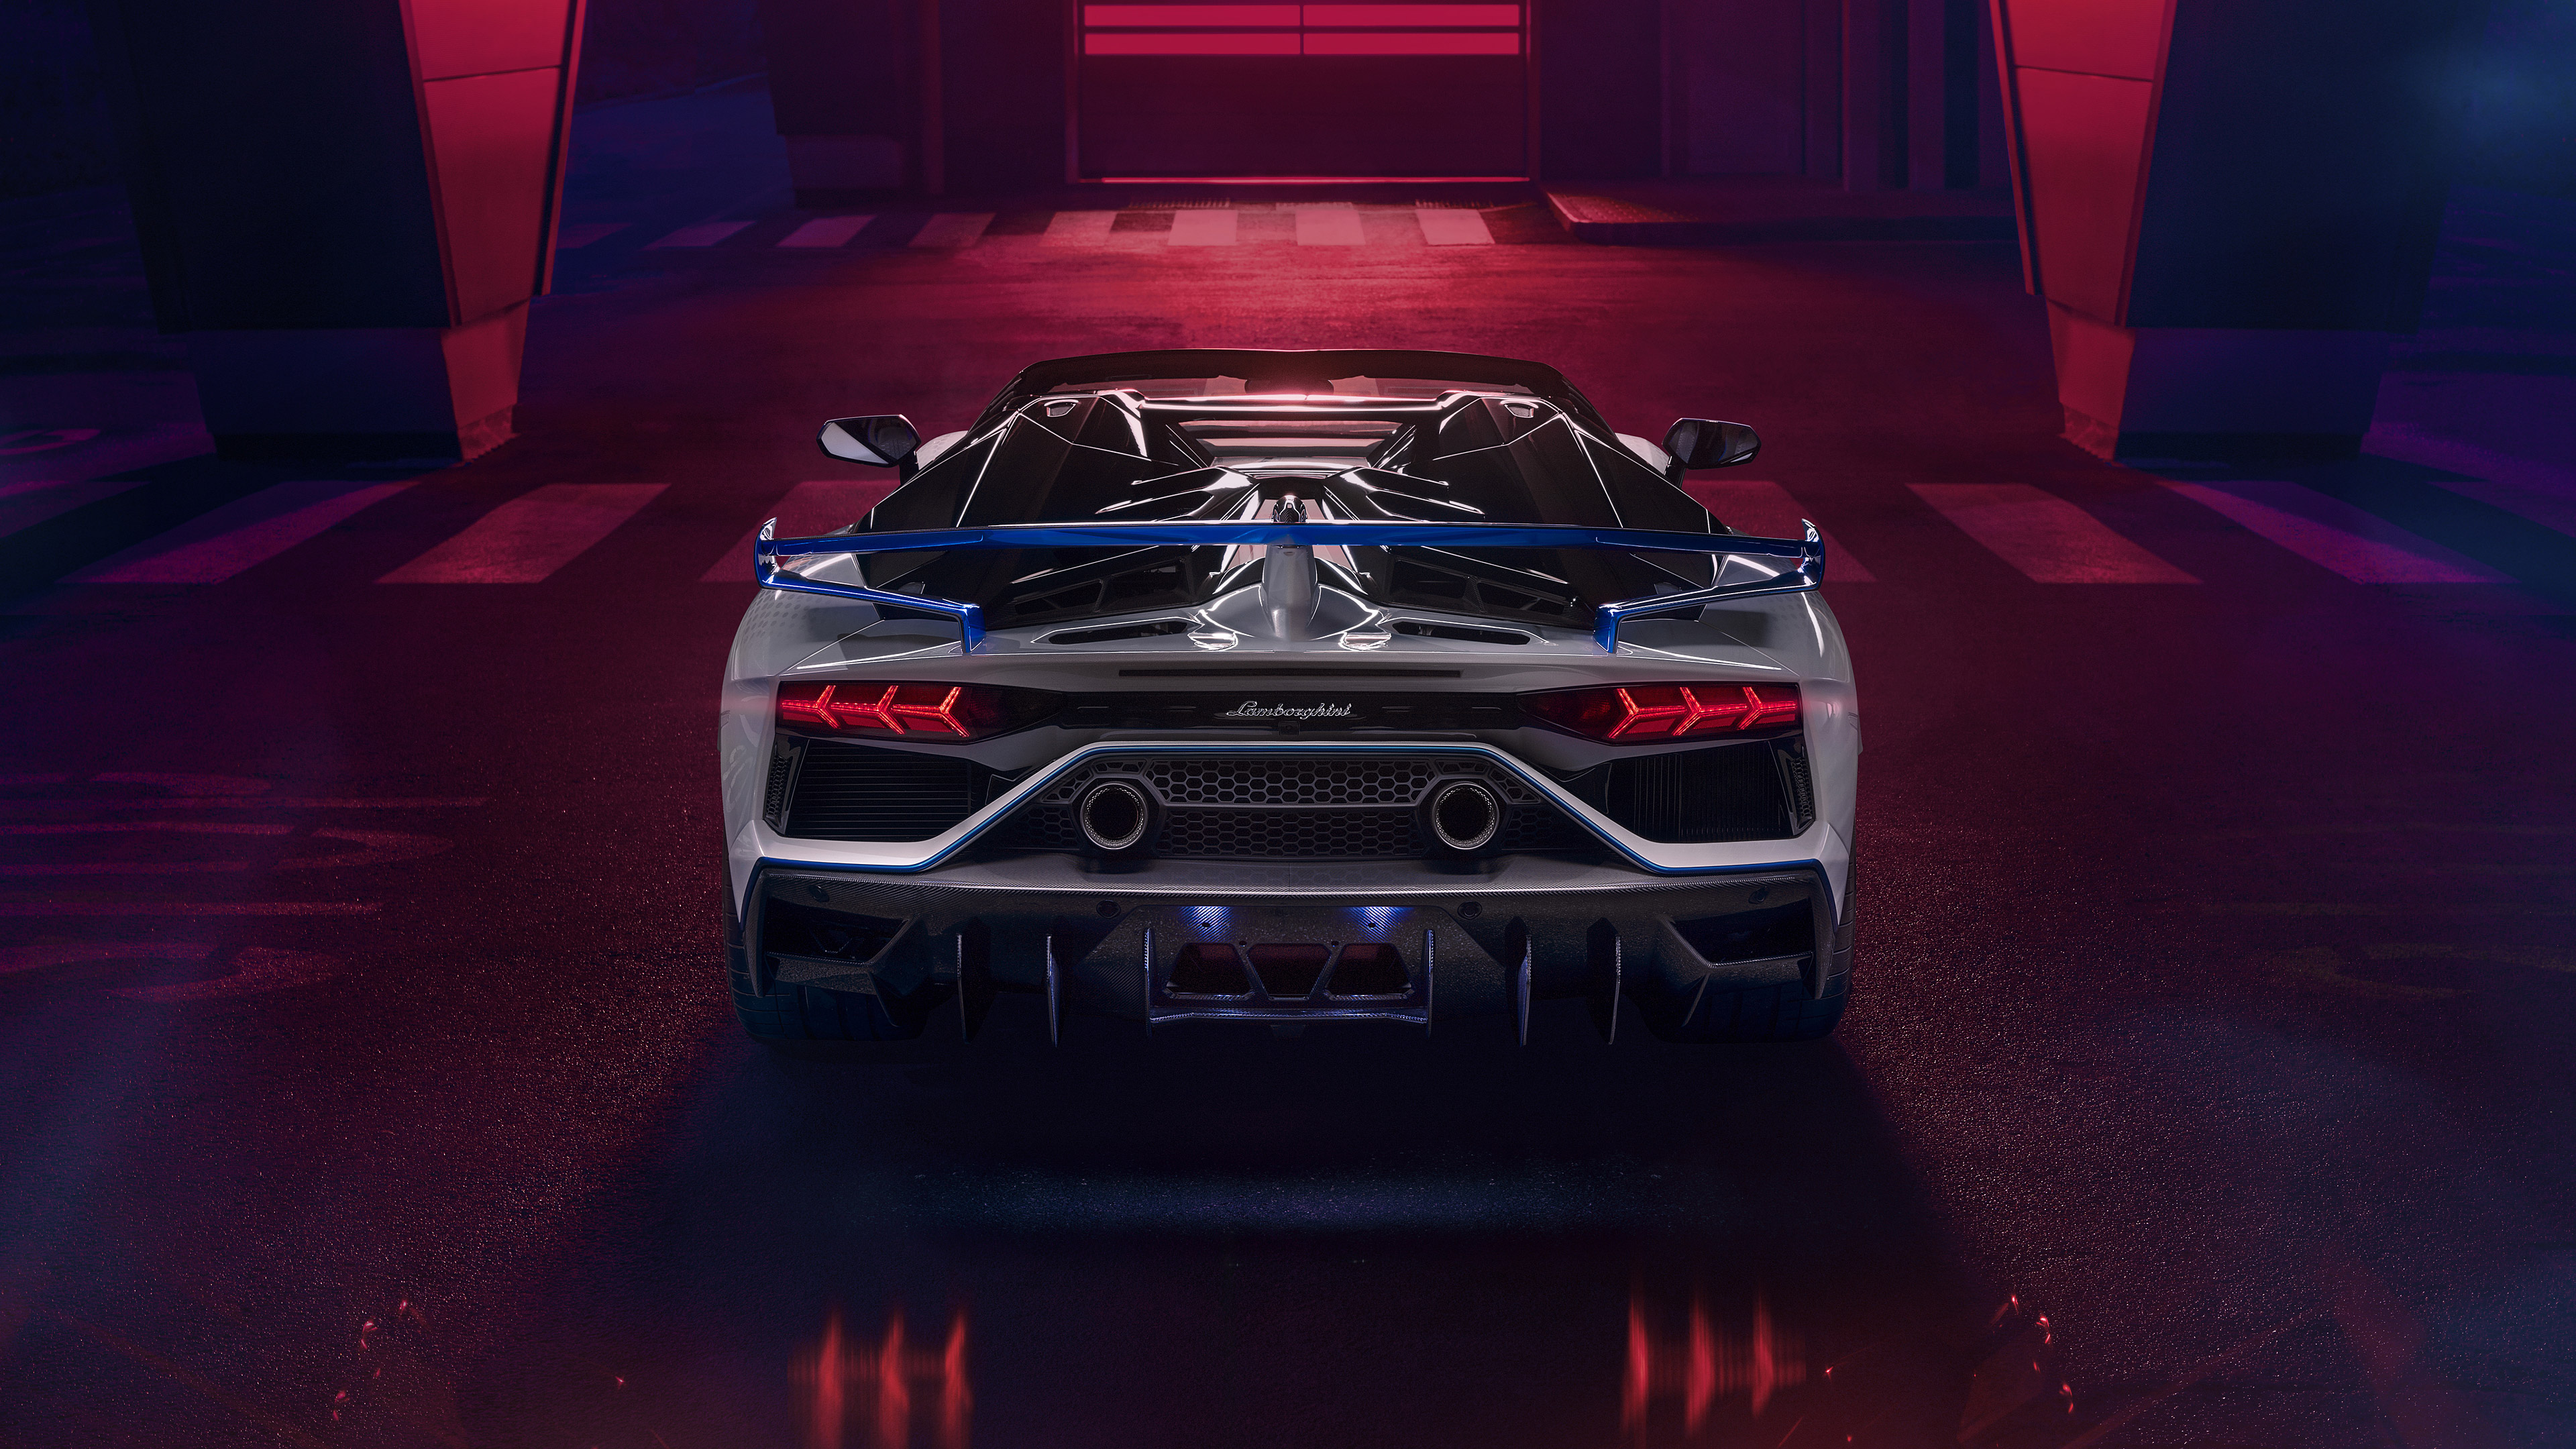 Télécharger des fonds d'écran Lamborghini Aventador Svj Roadster Édition Xago HD